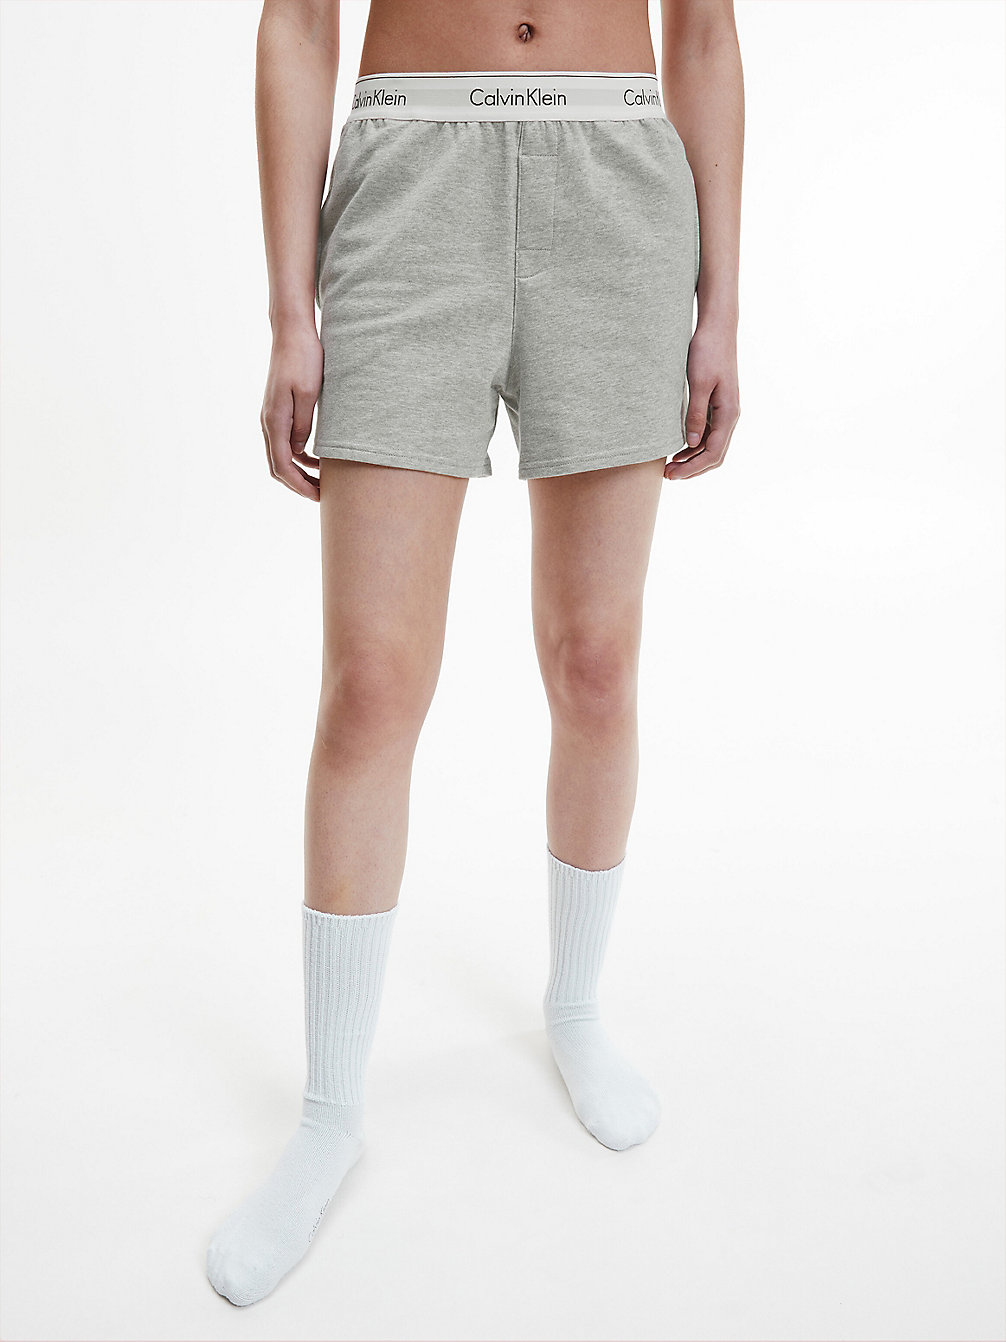 GREY HEATHER > Pyjama-Shorts – Modern Cotton > undefined Damen - Calvin Klein